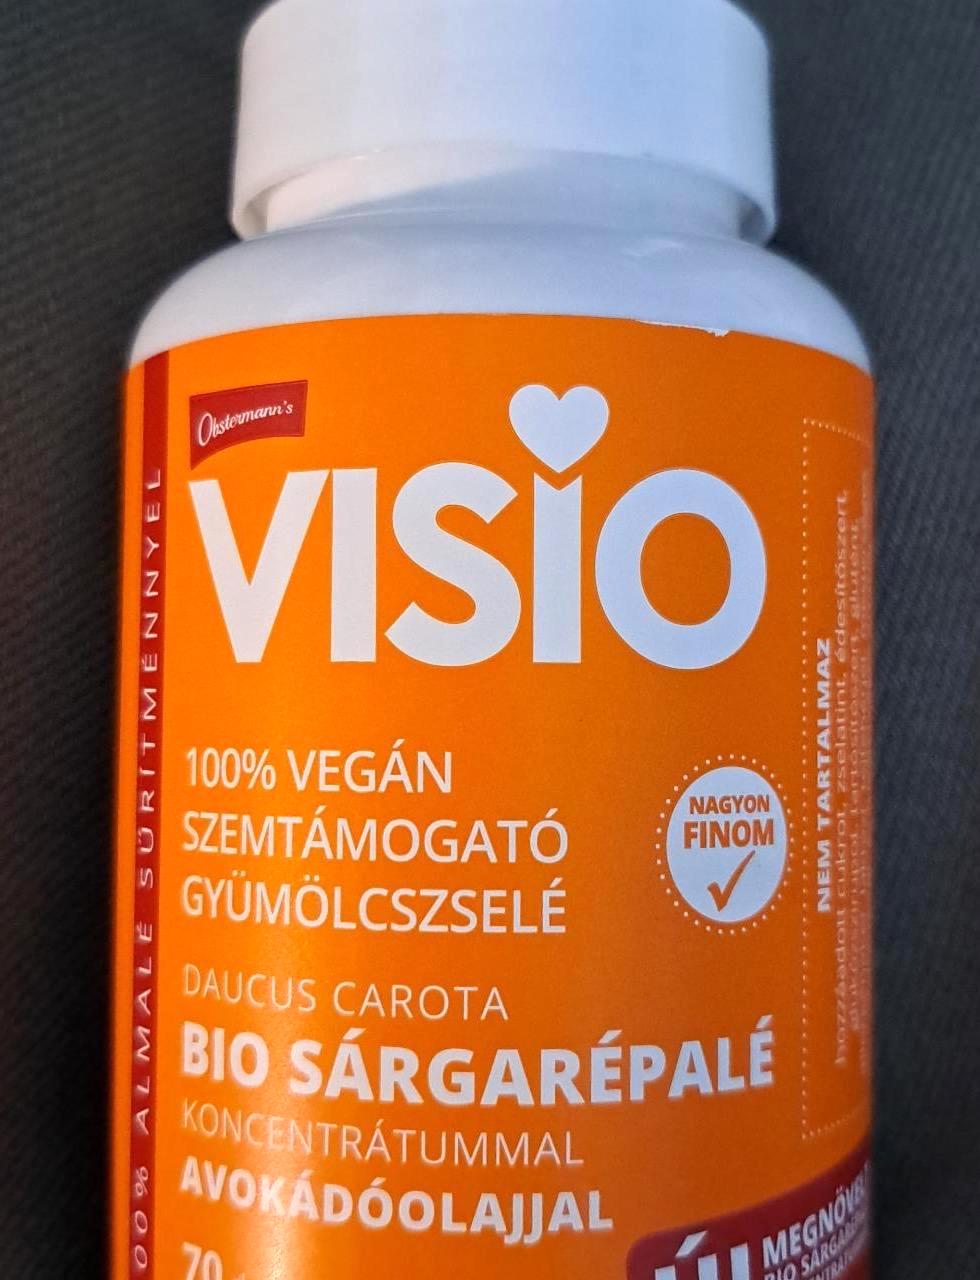 Képek - Visio 100% vegán szemtámogató gyümölcszselé Obstermann's